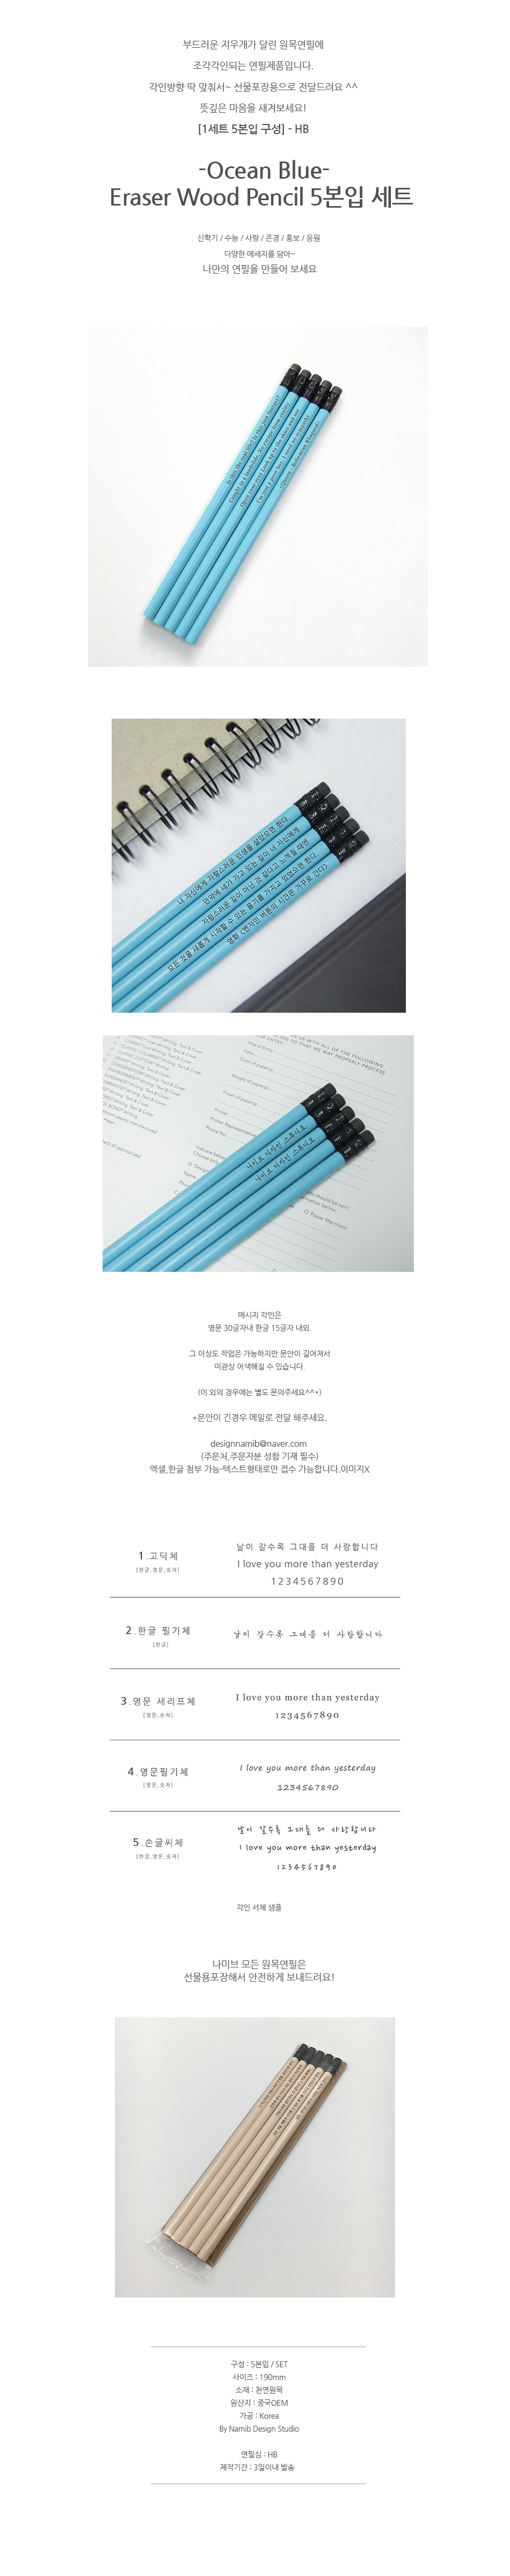 메시지 각인 - Eraser Woodpencil (Ocean Blue) 5본 세트 - 개별각인OK 5,000원 - 로그 디자인문구, 필기류, 연필, 주문제작연필 바보사랑 메시지 각인 - Eraser Woodpencil (Ocean Blue) 5본 세트 - 개별각인OK 5,000원 - 로그 디자인문구, 필기류, 연필, 주문제작연필 바보사랑